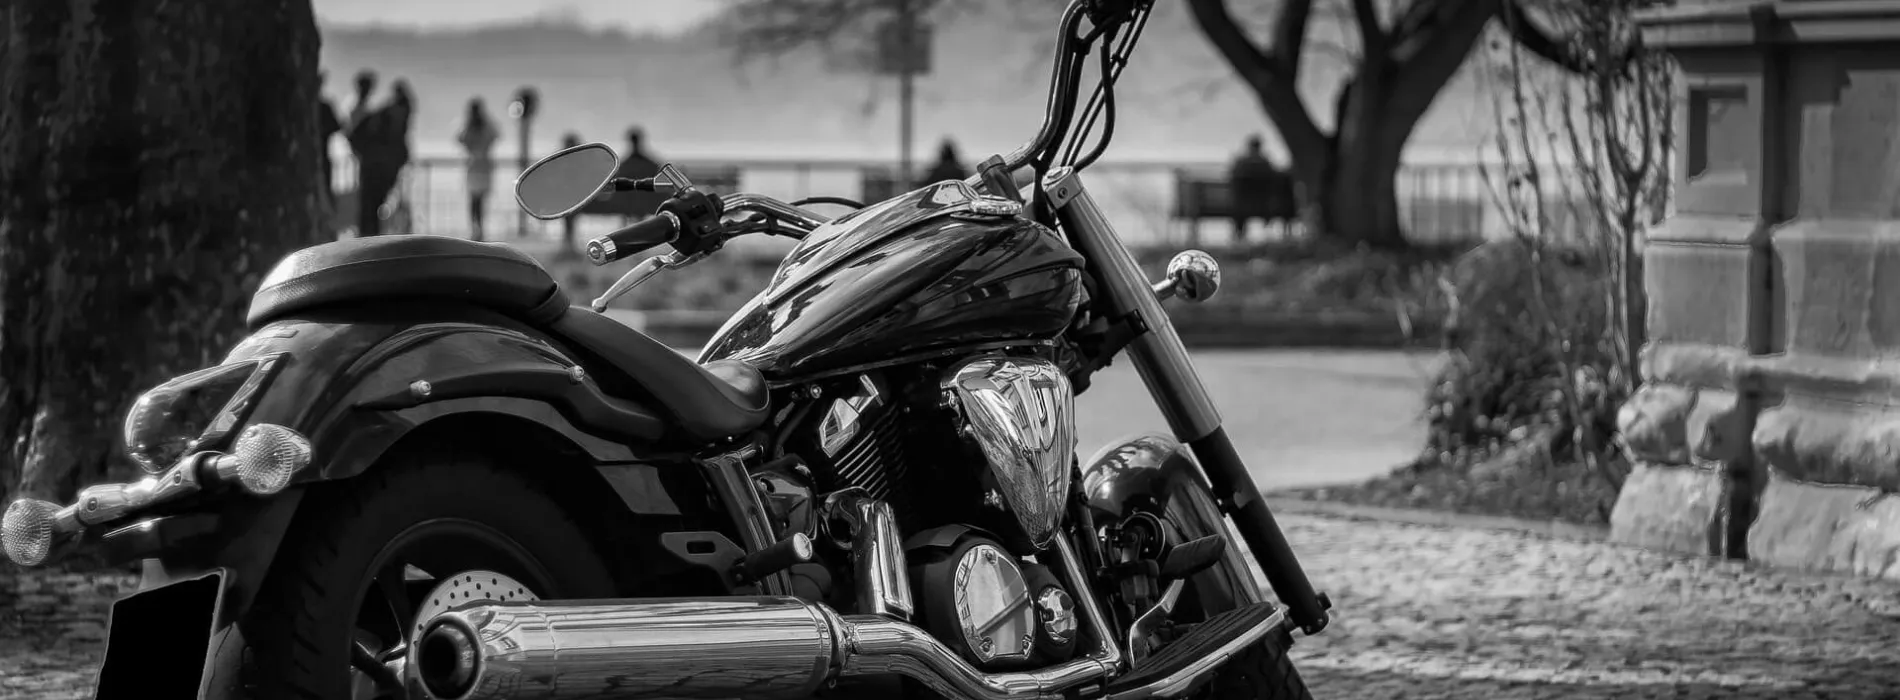 Motorradversicherung - Haftpflichtversicherung